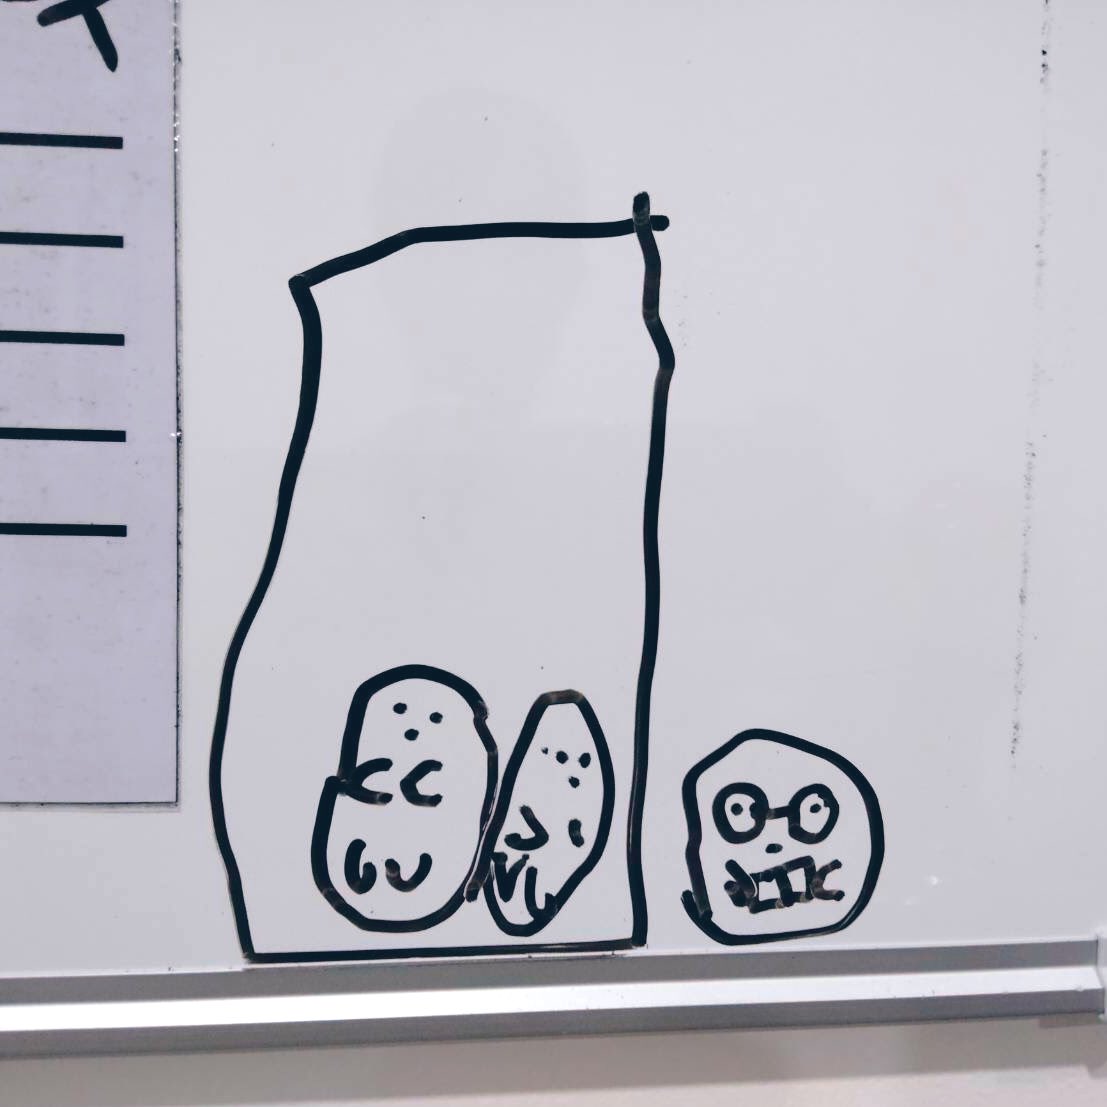 先日、生徒っ子に「タピオカかいて〜」と言われて描いたタピオカ(左)と、「手足があって、もっとカラフルなの」と描いてくれたタピオカ(右)

これは…すみっコか…!! 